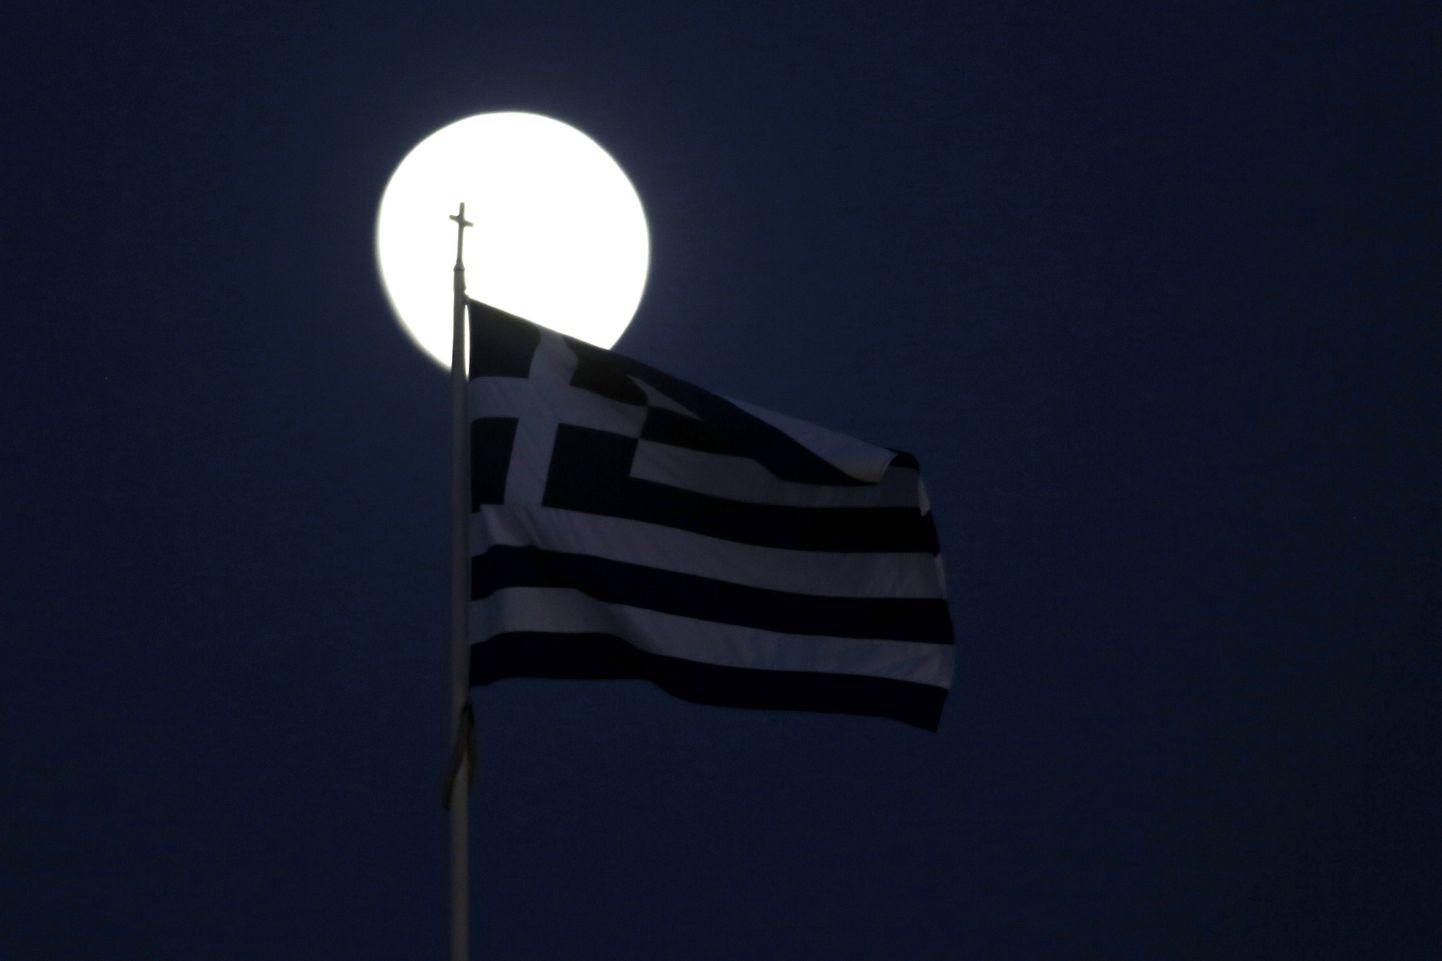 Kreeka lipp Ateenas täiskuu taustal.